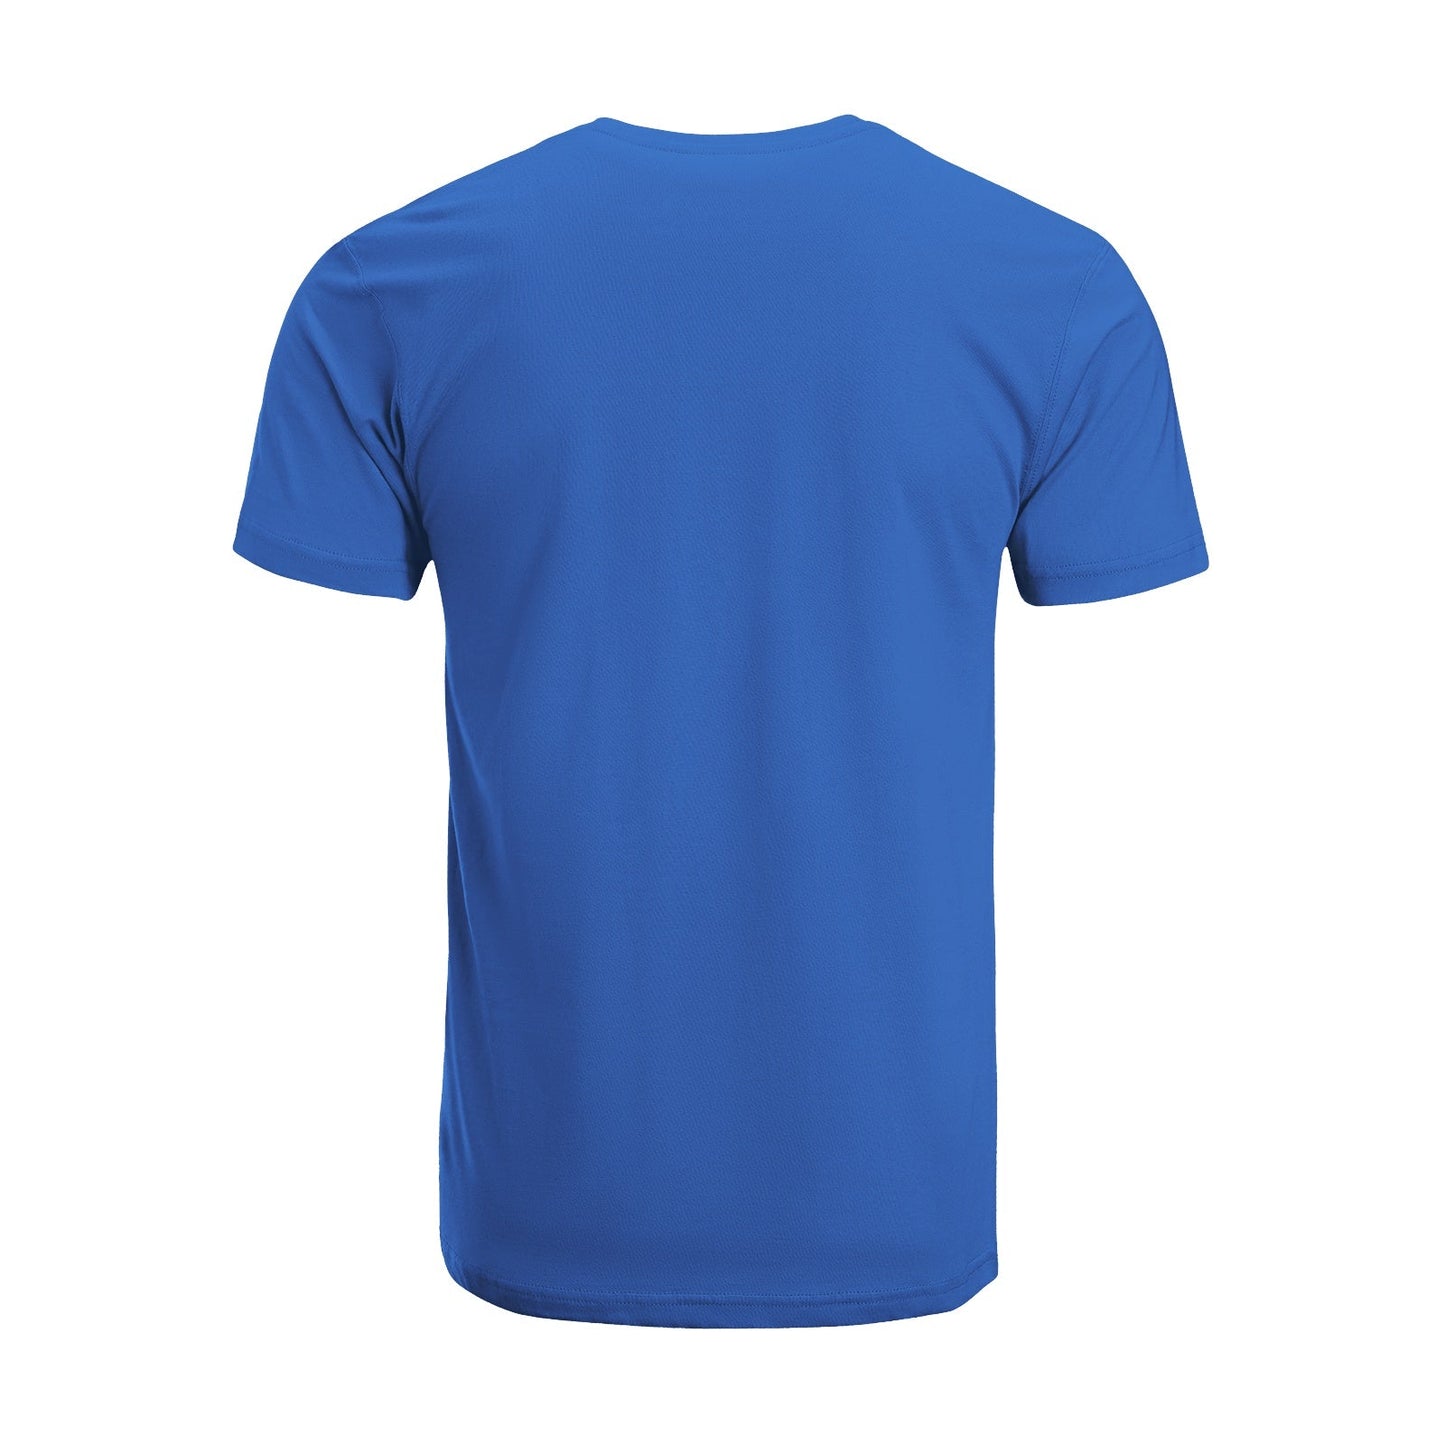 Unisex Short Sleeve Crew Neck Cotton Jersey T-Shirt TRUCK 37